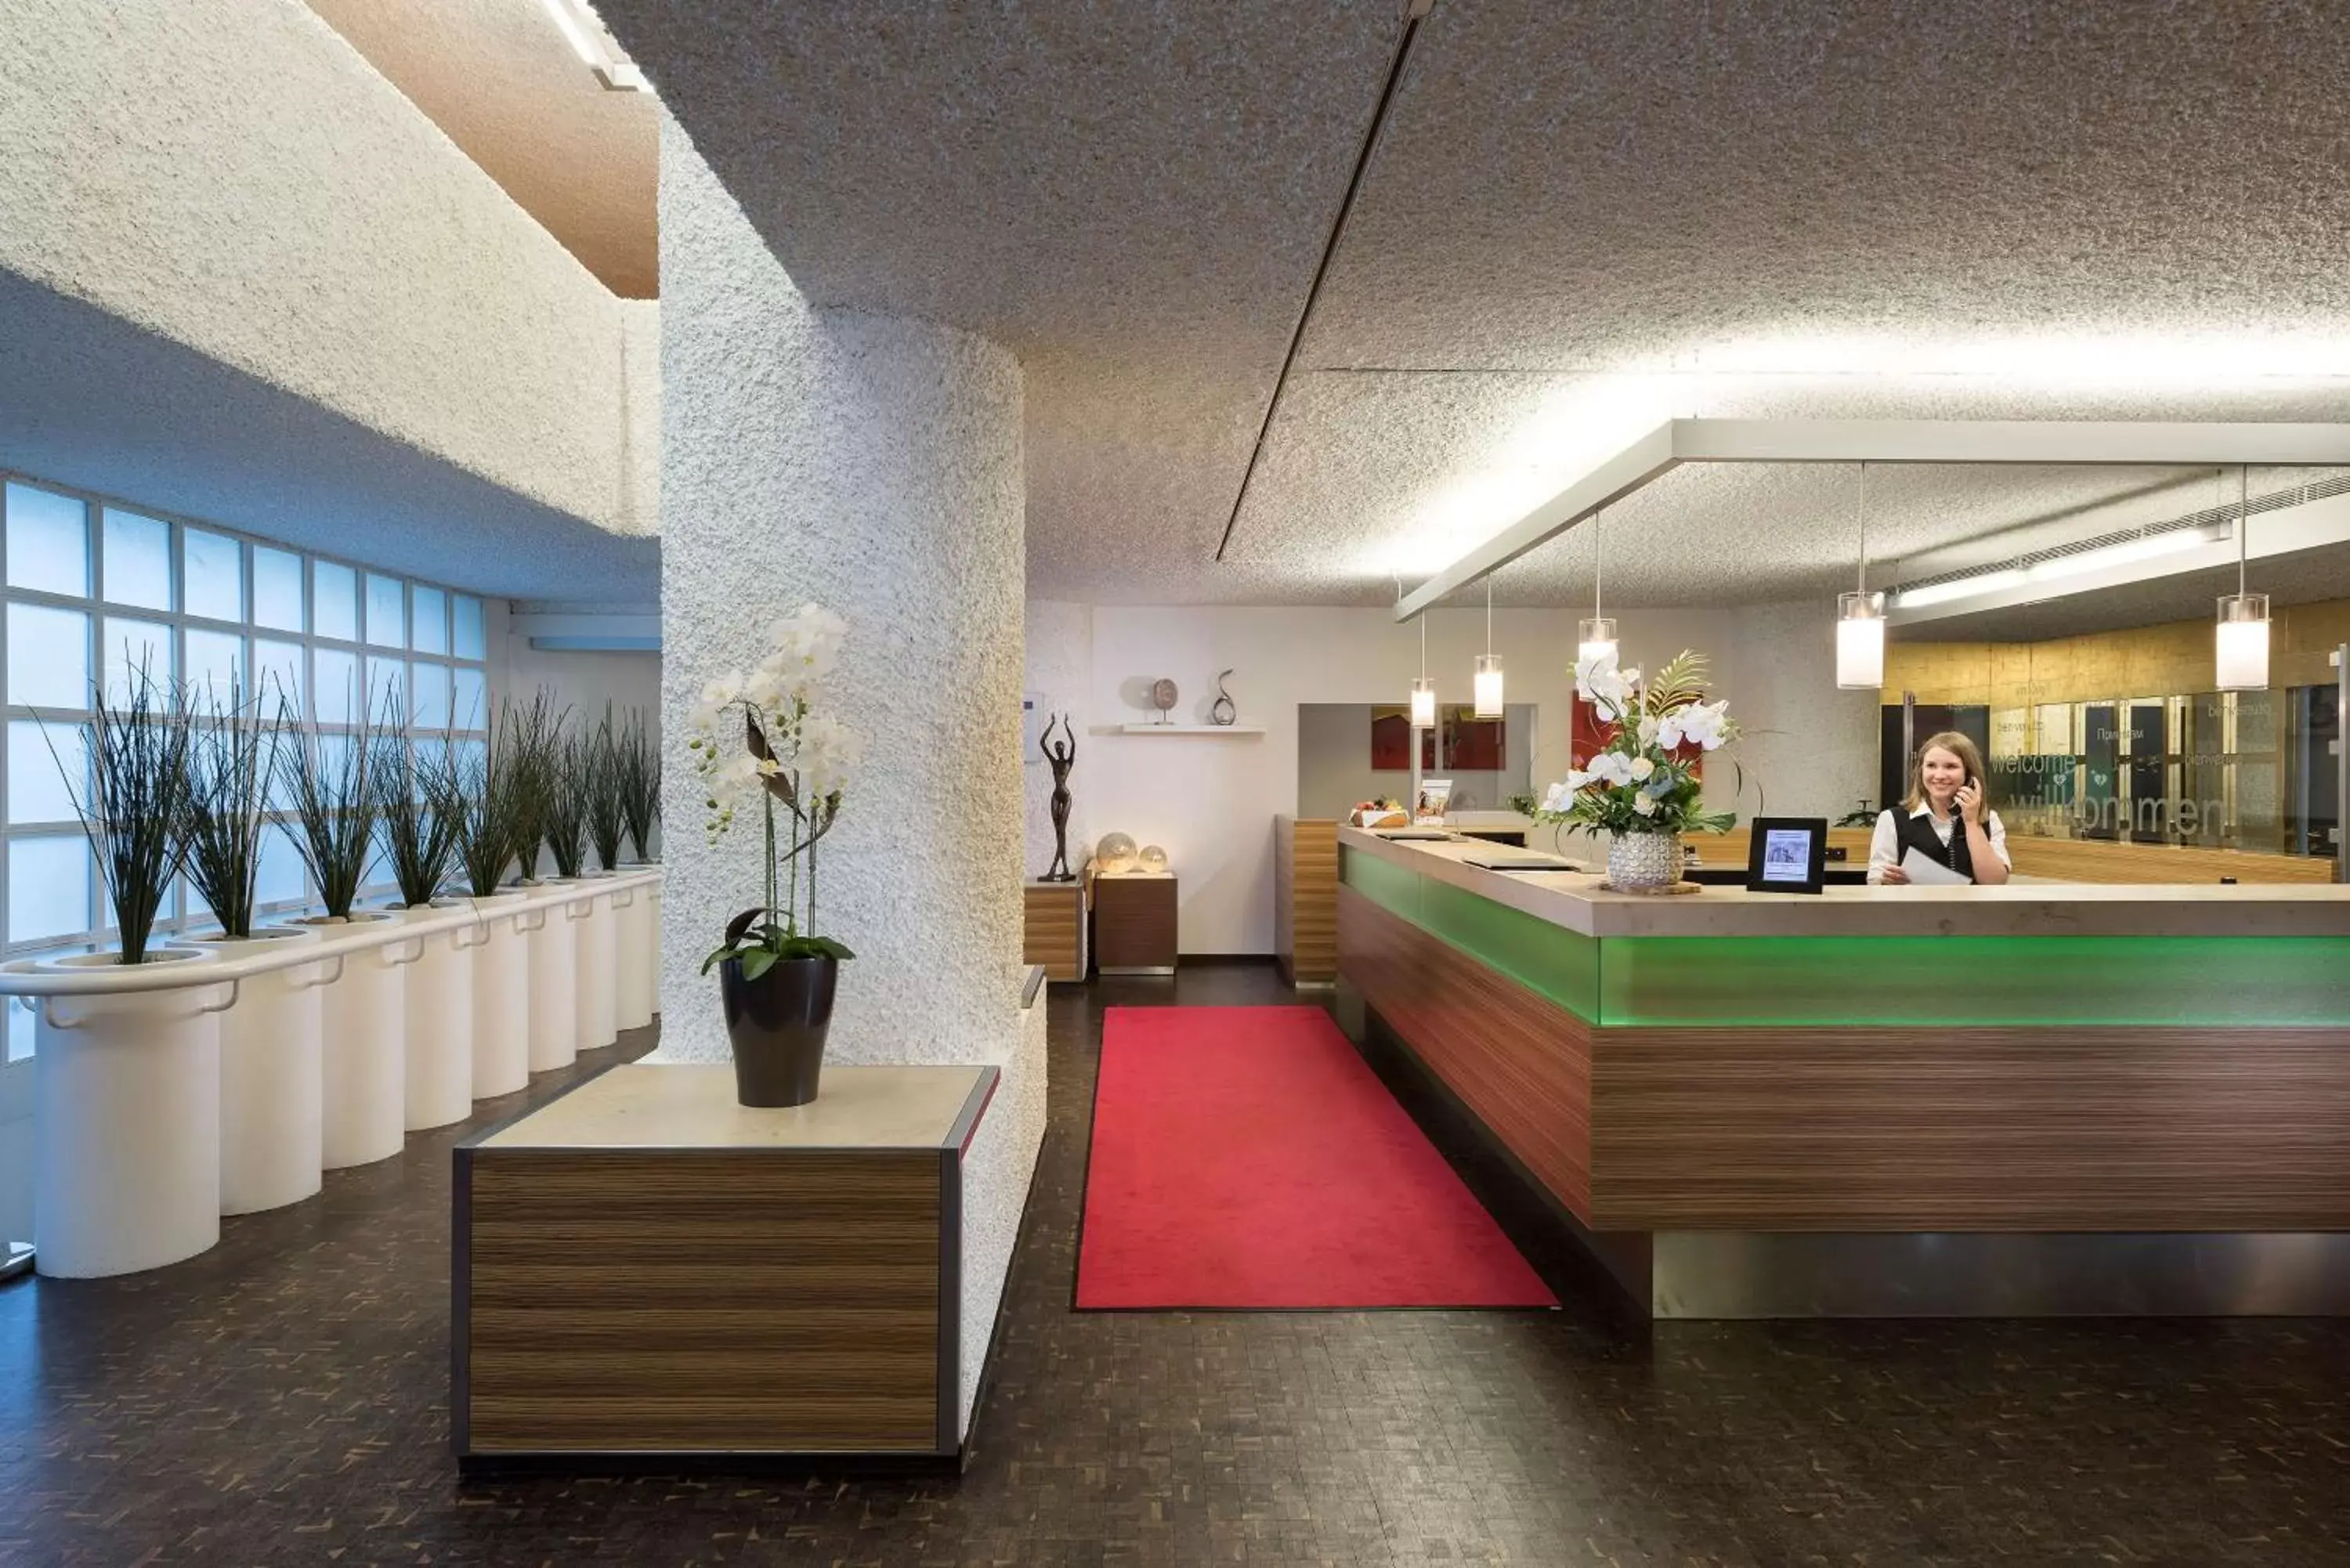 Lobby or reception in Best Western Premier Parkhotel Bad Mergentheim